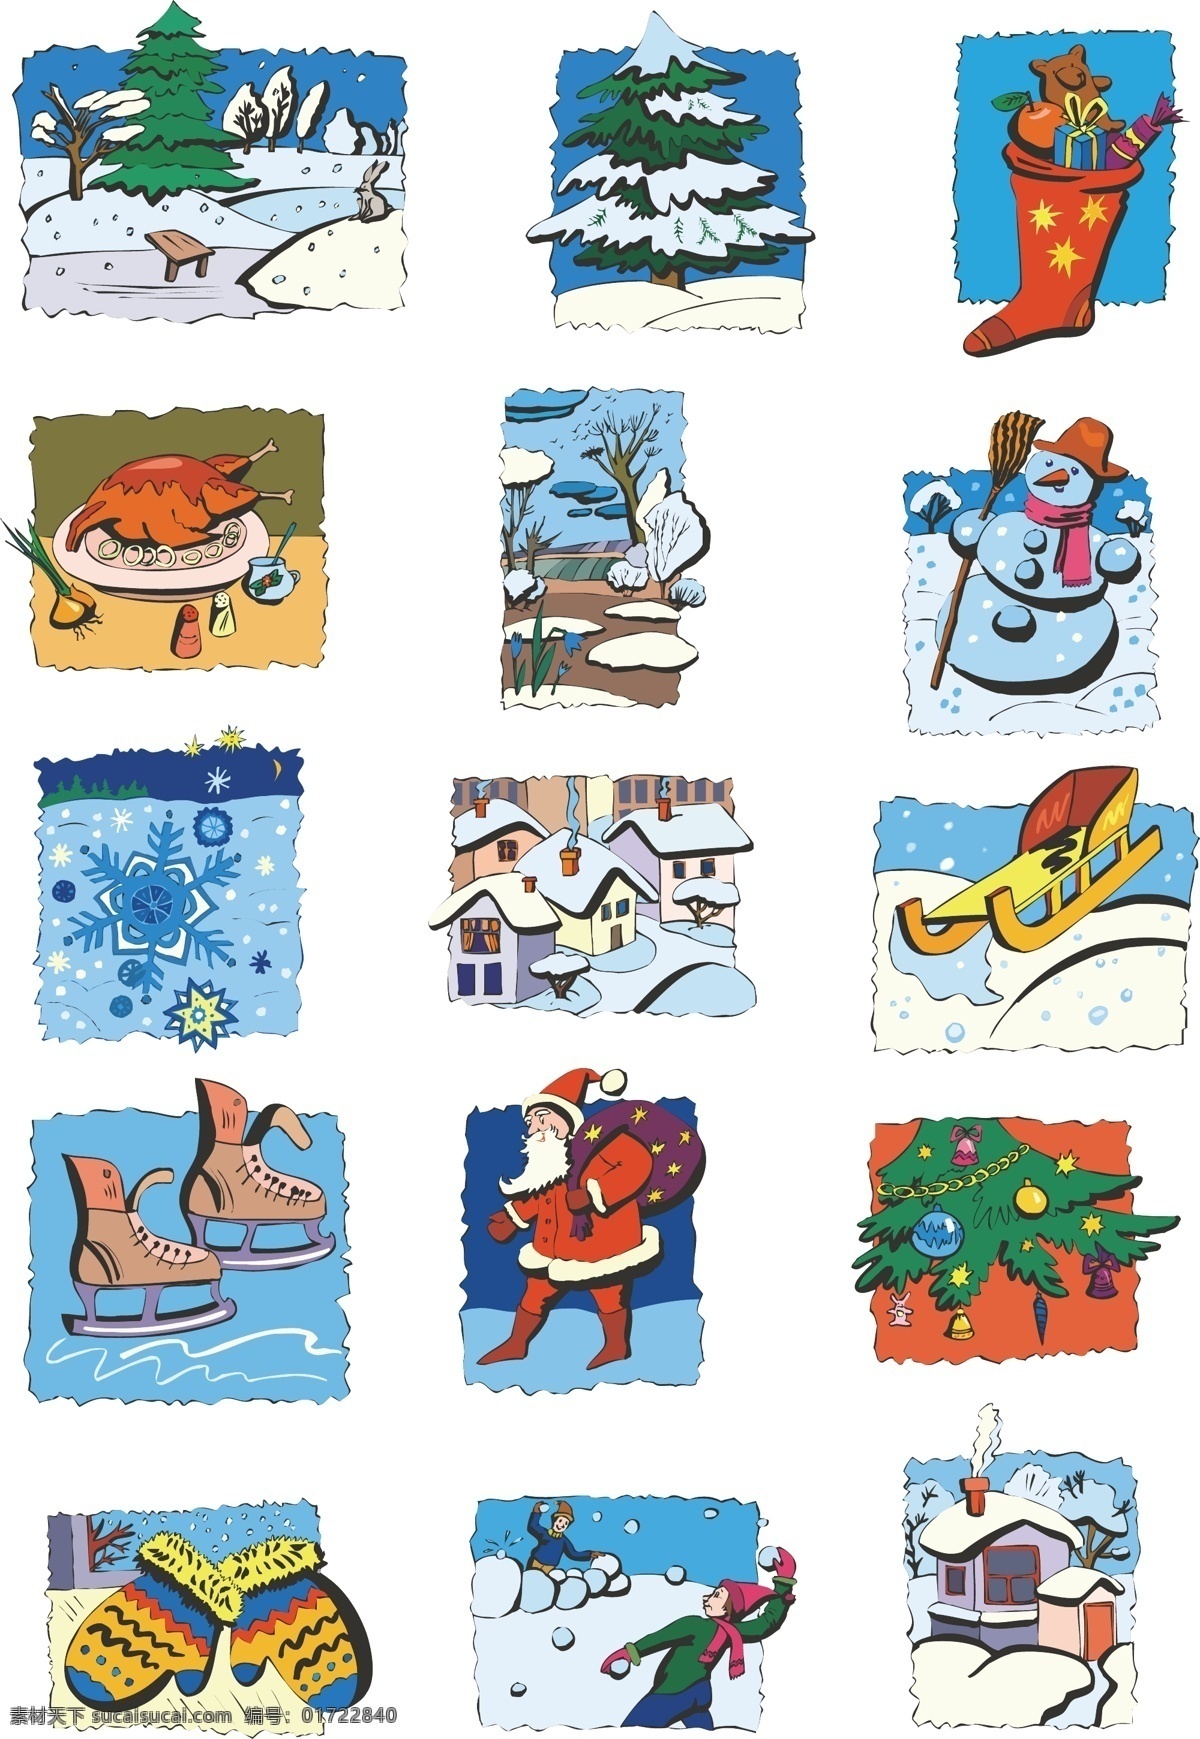 冬季圣诞插画 冬季 雪 圣诞 插画 卡通 动漫动画 风景漫画